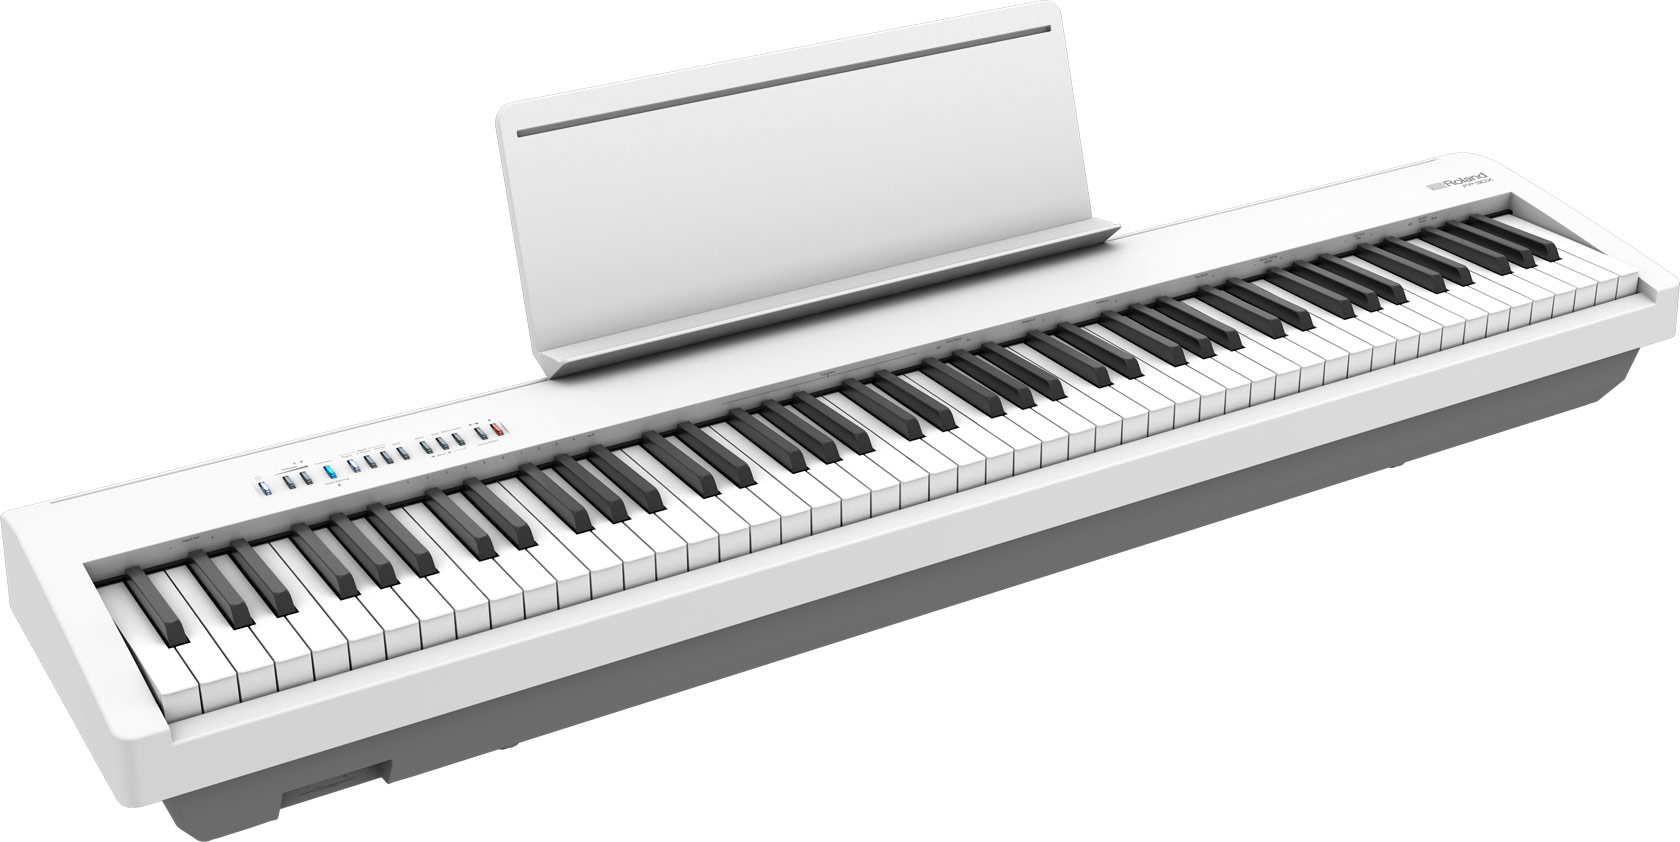 prueba retirada ficción Roland FP-30X WH Piano digital portátil Blanco Bluetooth Premium